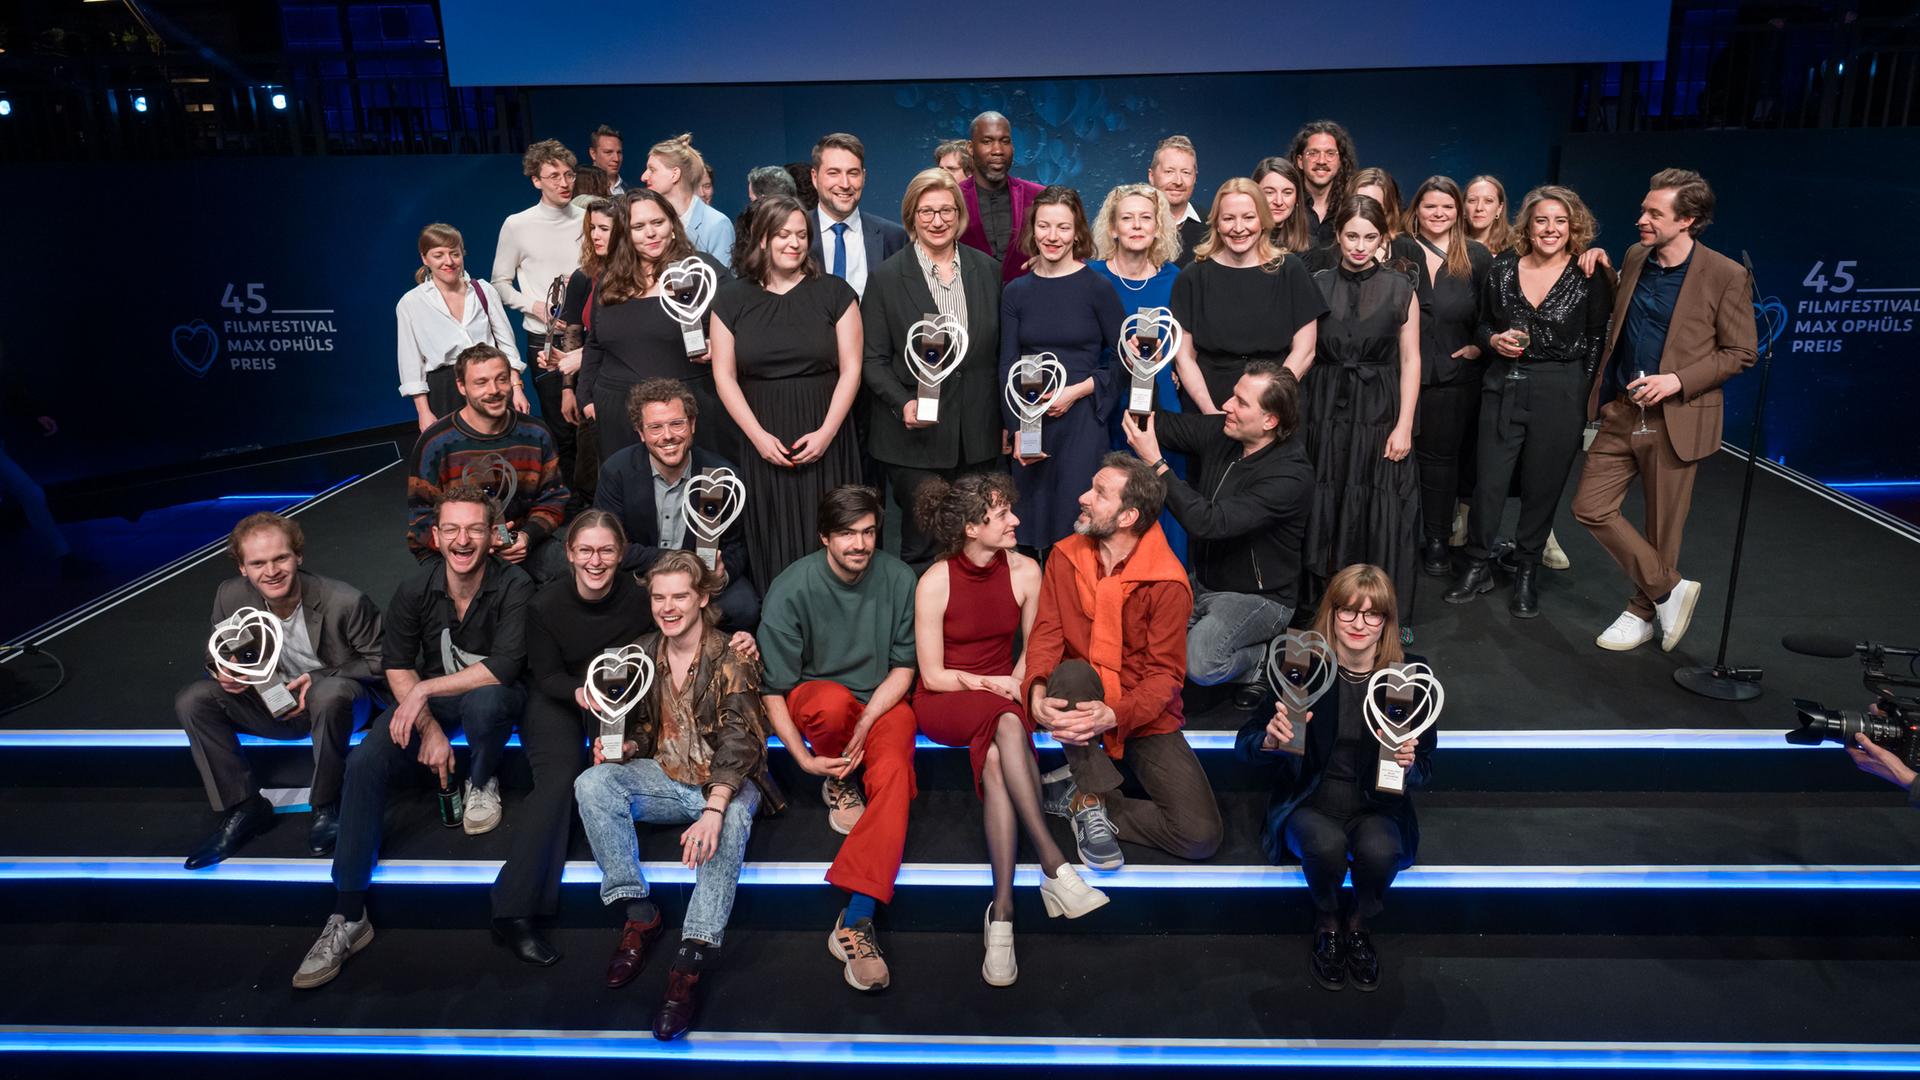 Preisträger des 45. Filmfestival Max Ophüls Preis stehen für ein Gruppenfoto auf der Bühne zusammen.